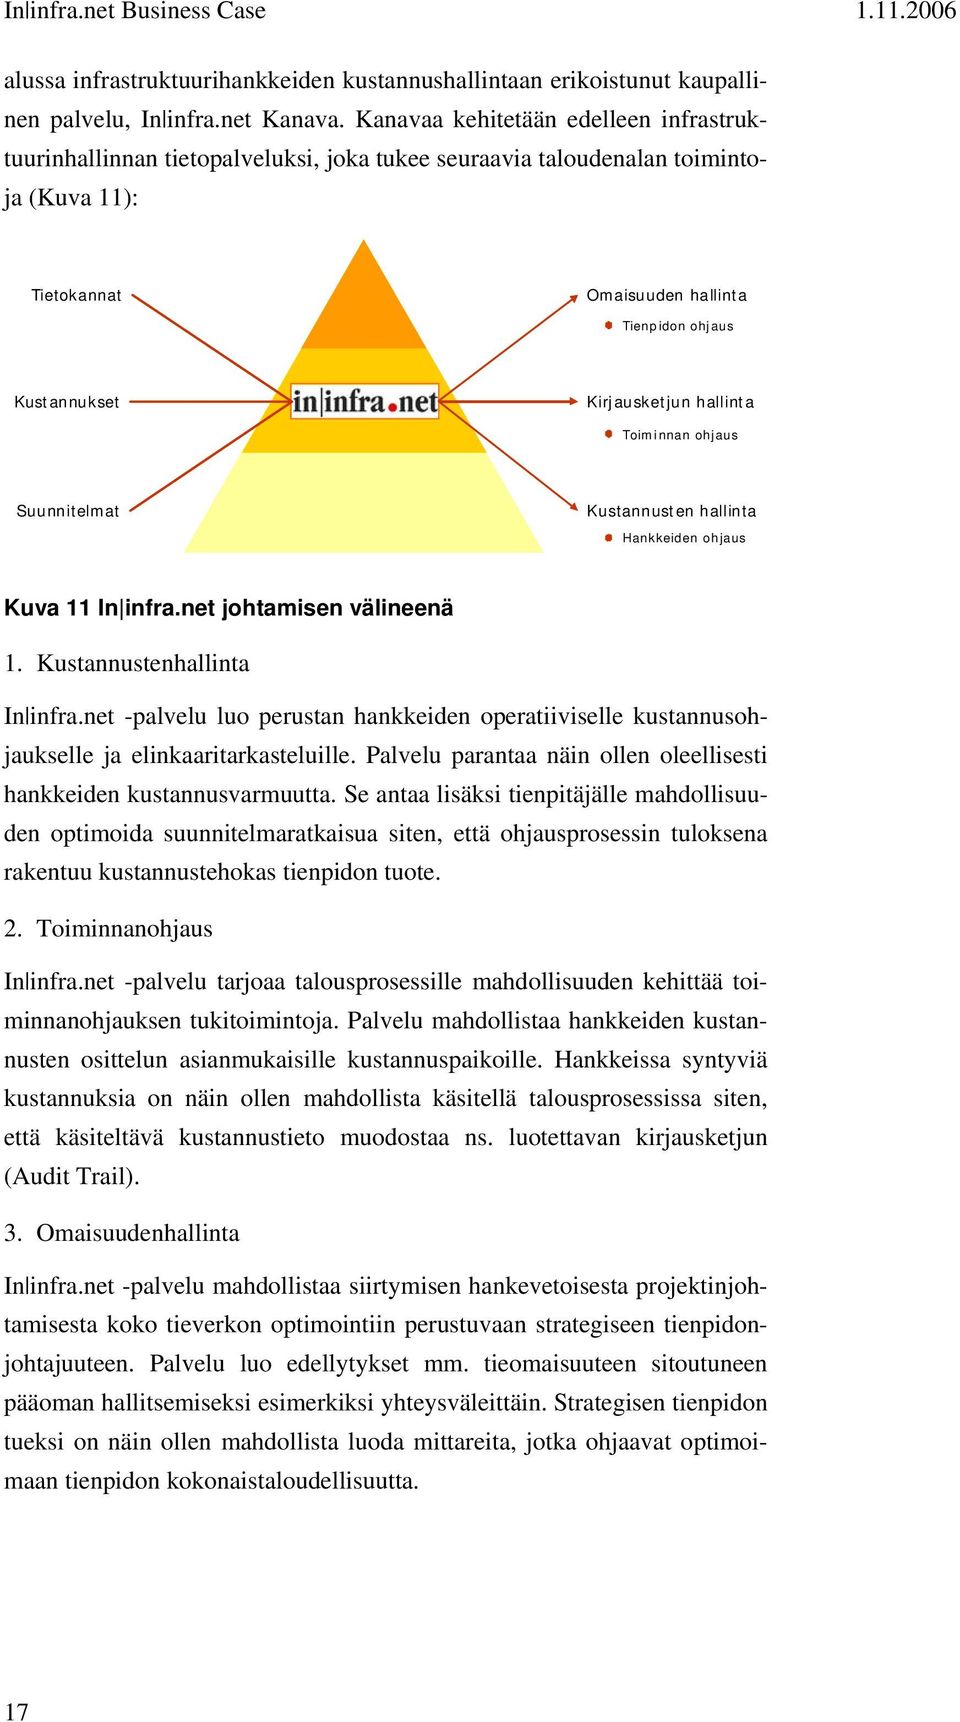 Kirjausketjun hallinta Toiminnan ohjaus Suunnitelmat Kustannusten hallinta Hankkeiden ohjaus Kuva 11 In infra.net johtamisen välineenä 1. Kustannustenhallinta In infra.